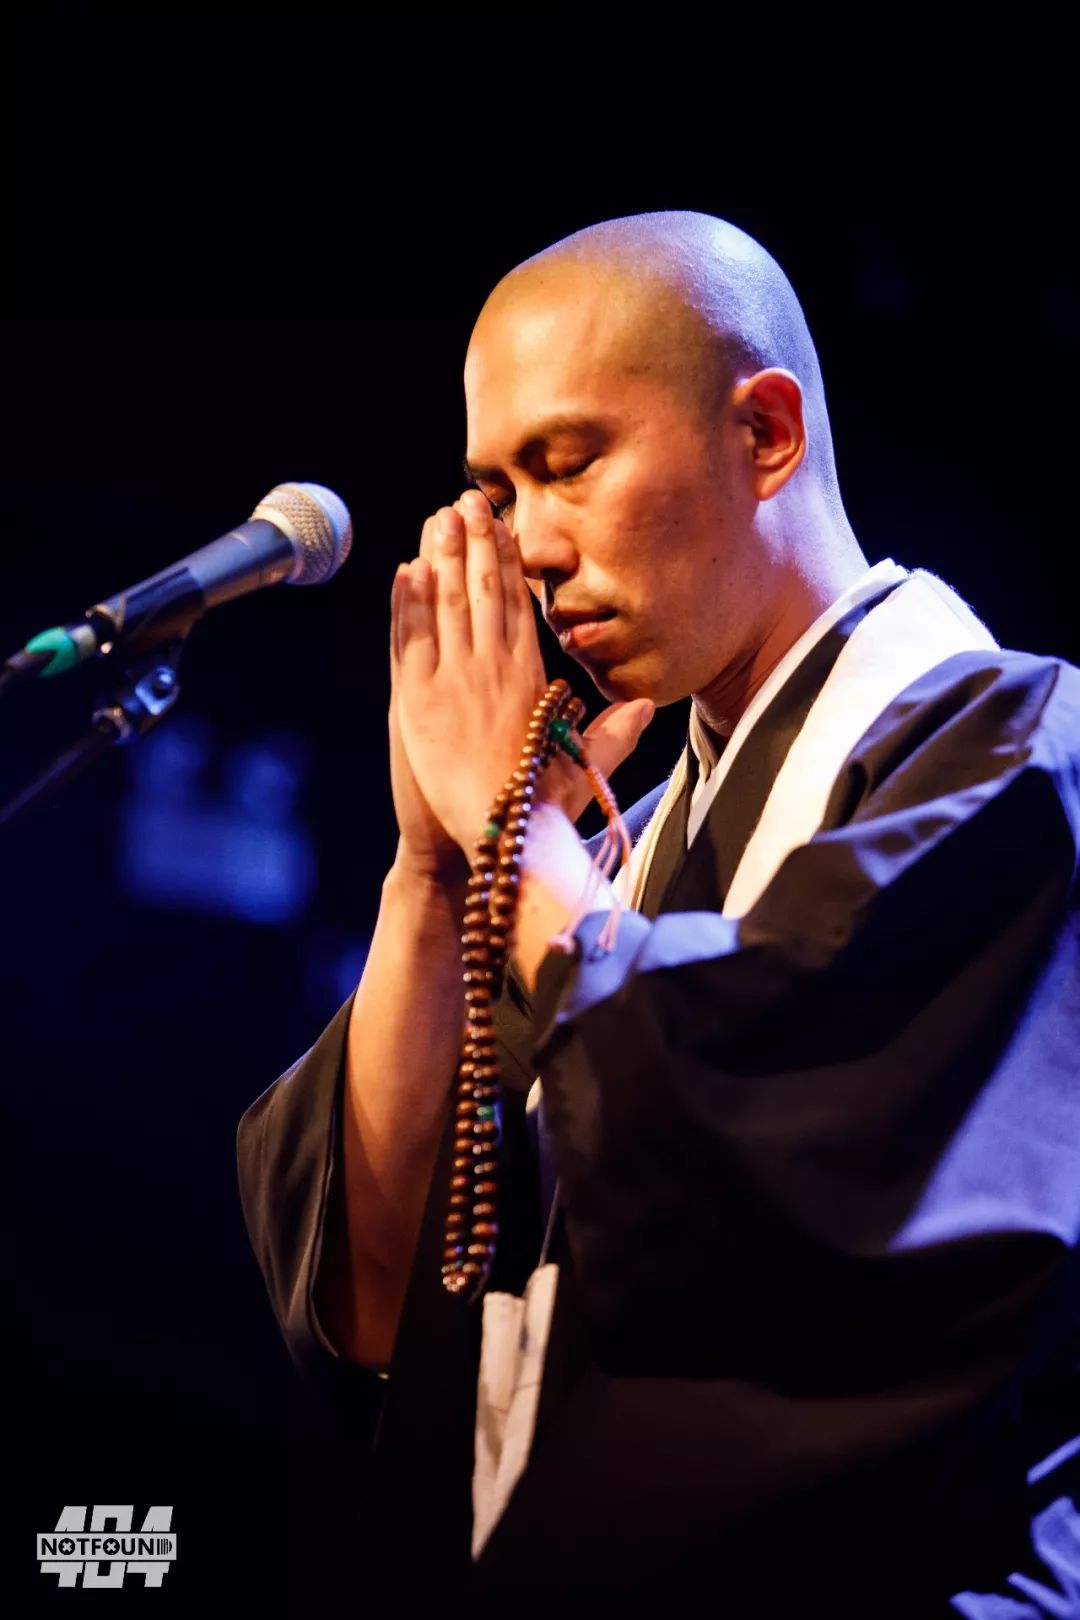 日本僧人唱歌图片